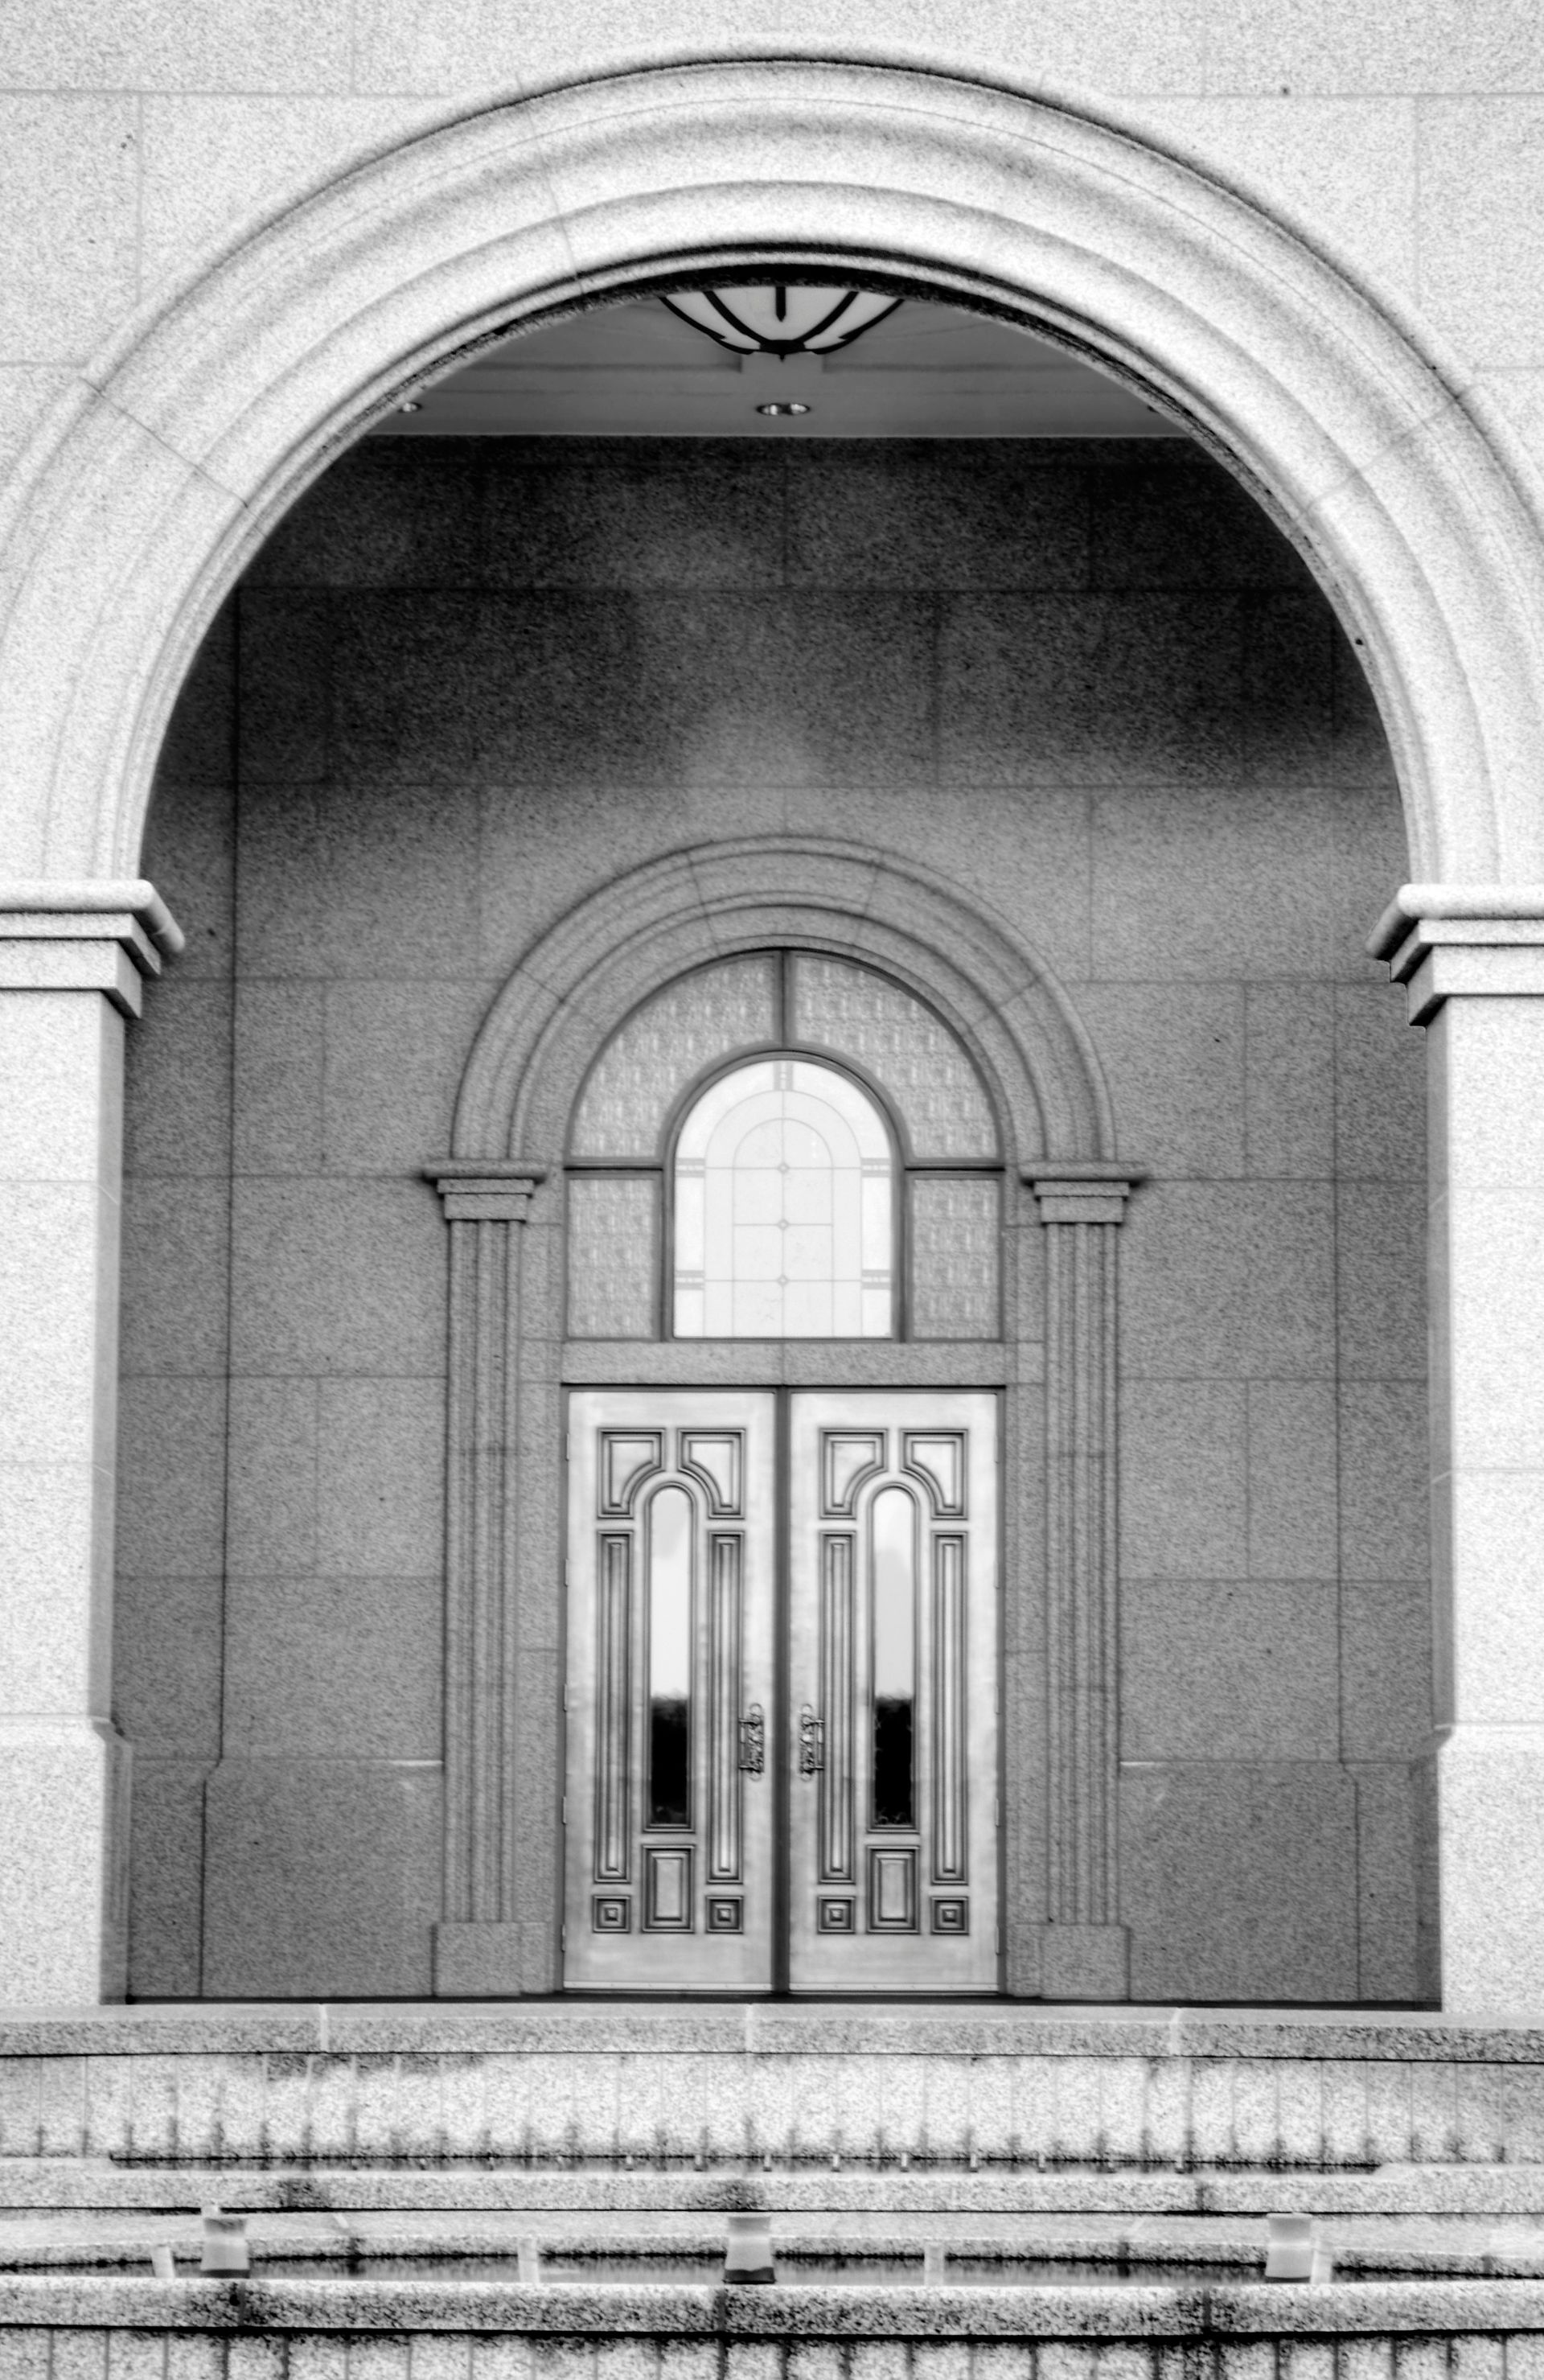 The Sacramento California Temple entrance.